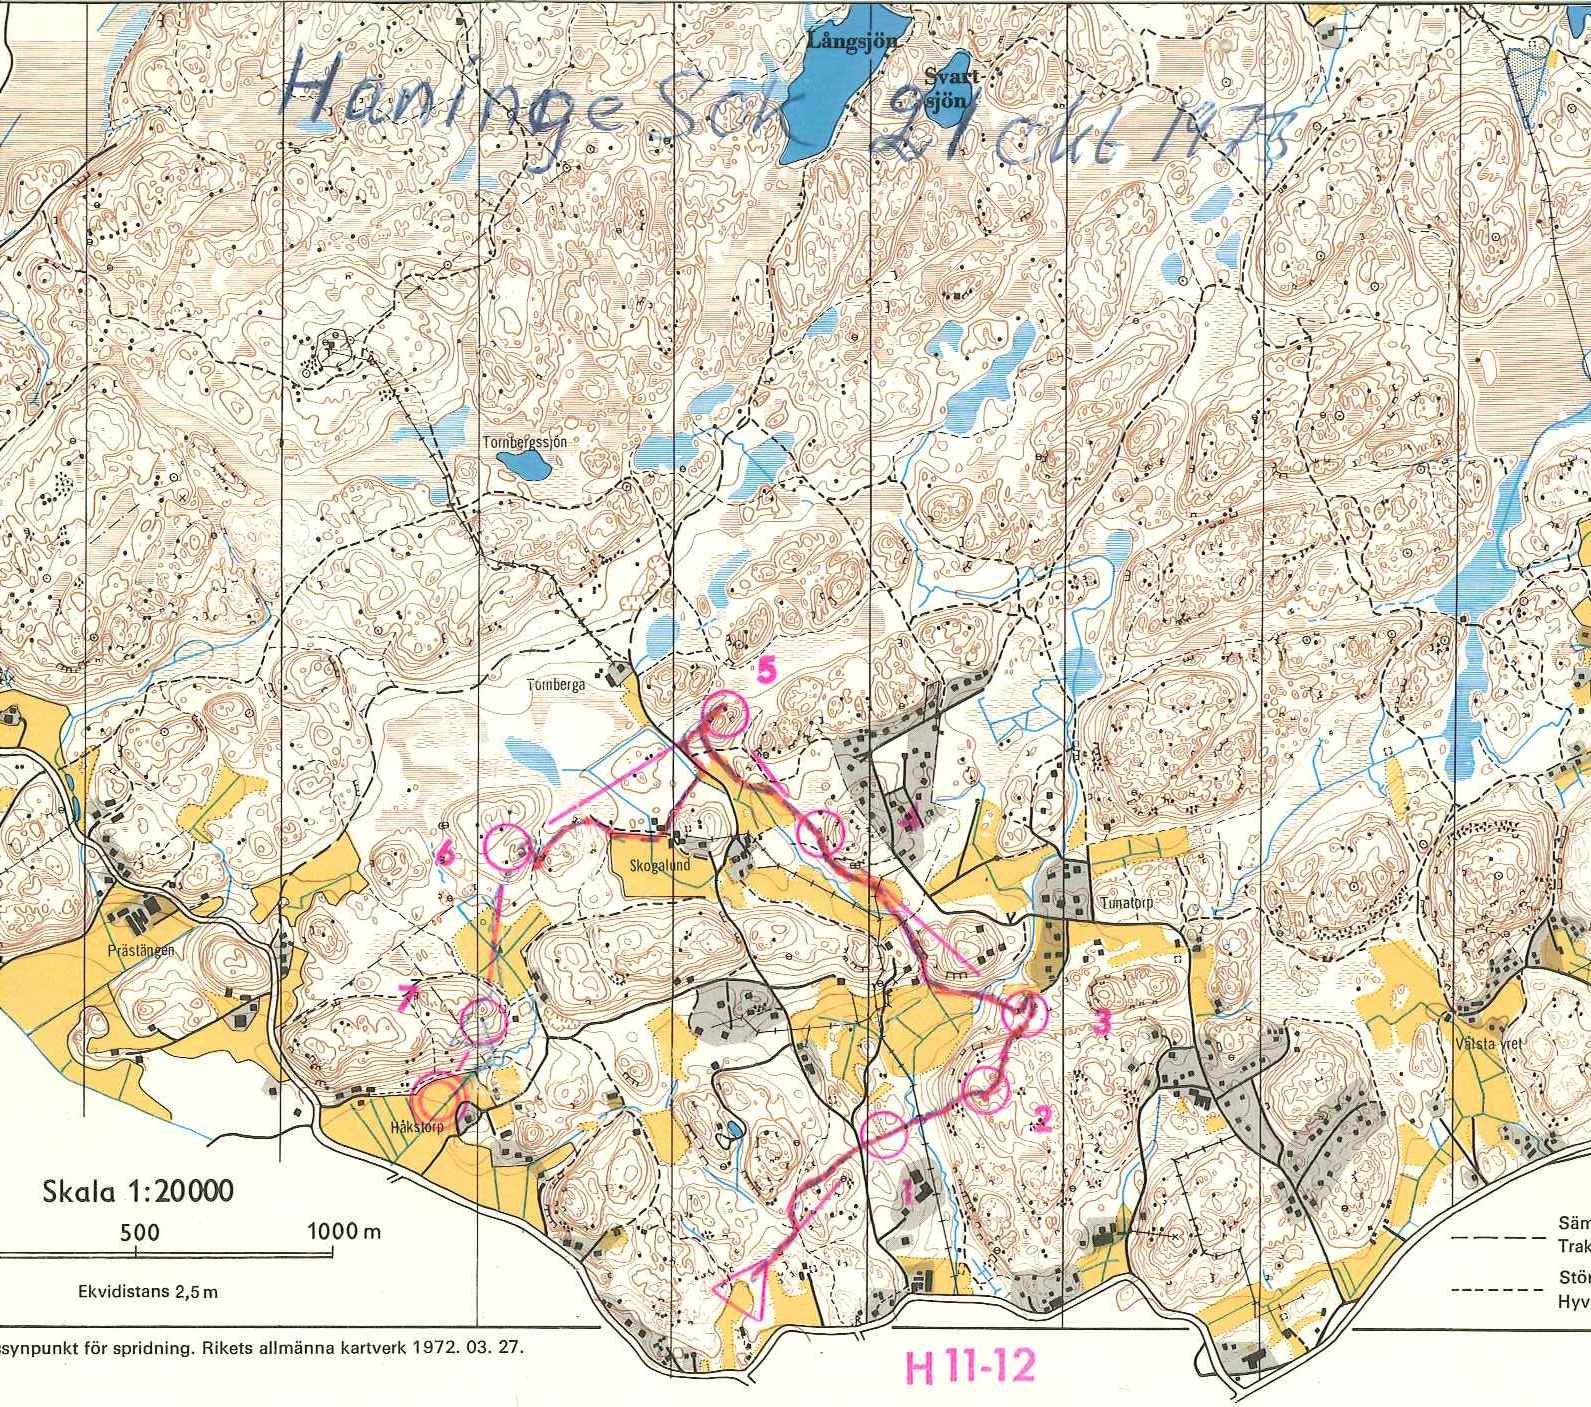 Haninge (21.10.1973)